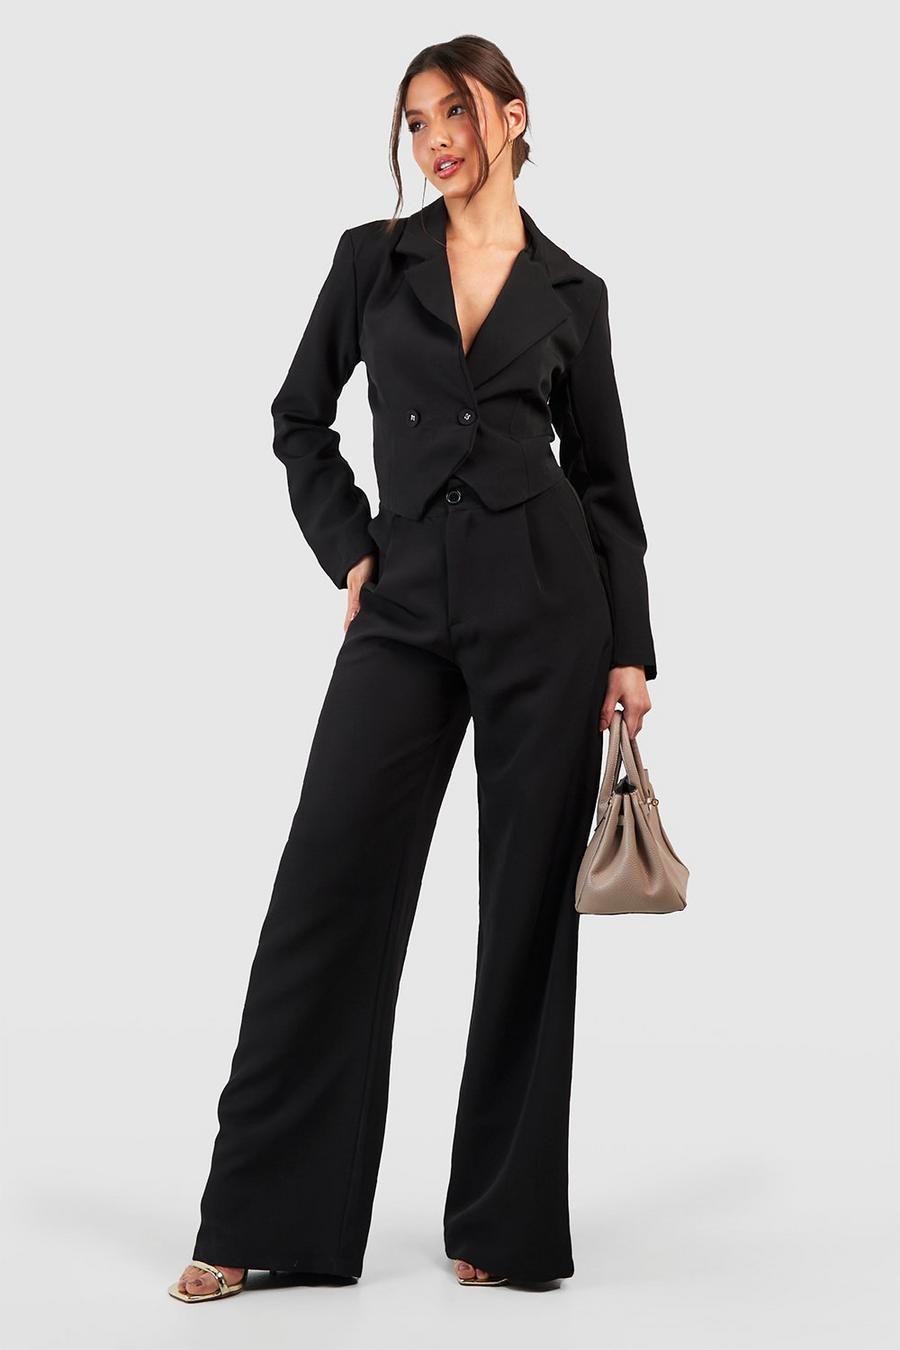 Megan Fox - Anzughose mit weitem Bein, Black